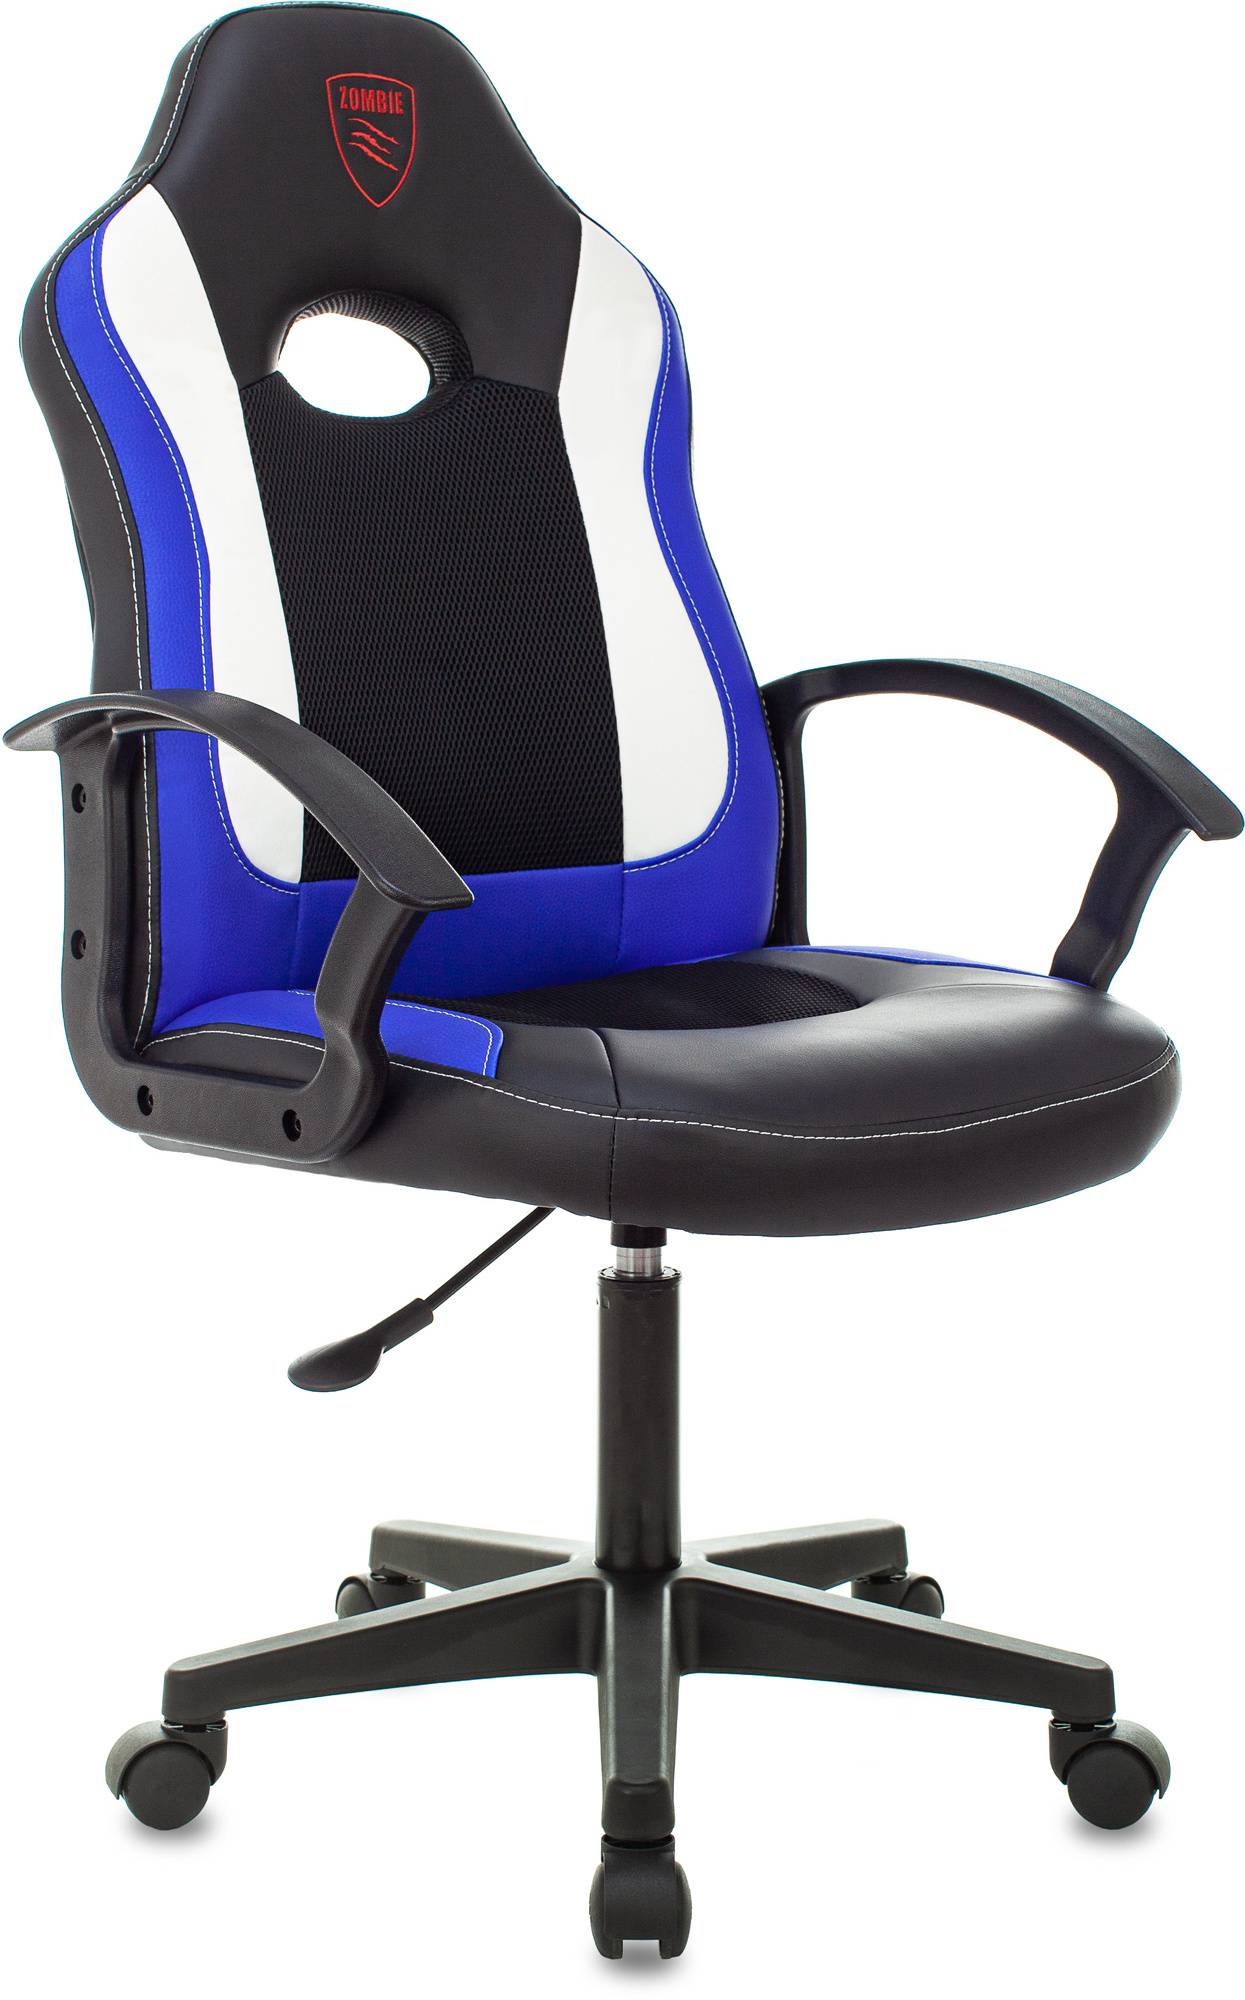 Кресло игровое Zombie 11LT, обивка: эко.кожа/ткань, цвет: черный/синий